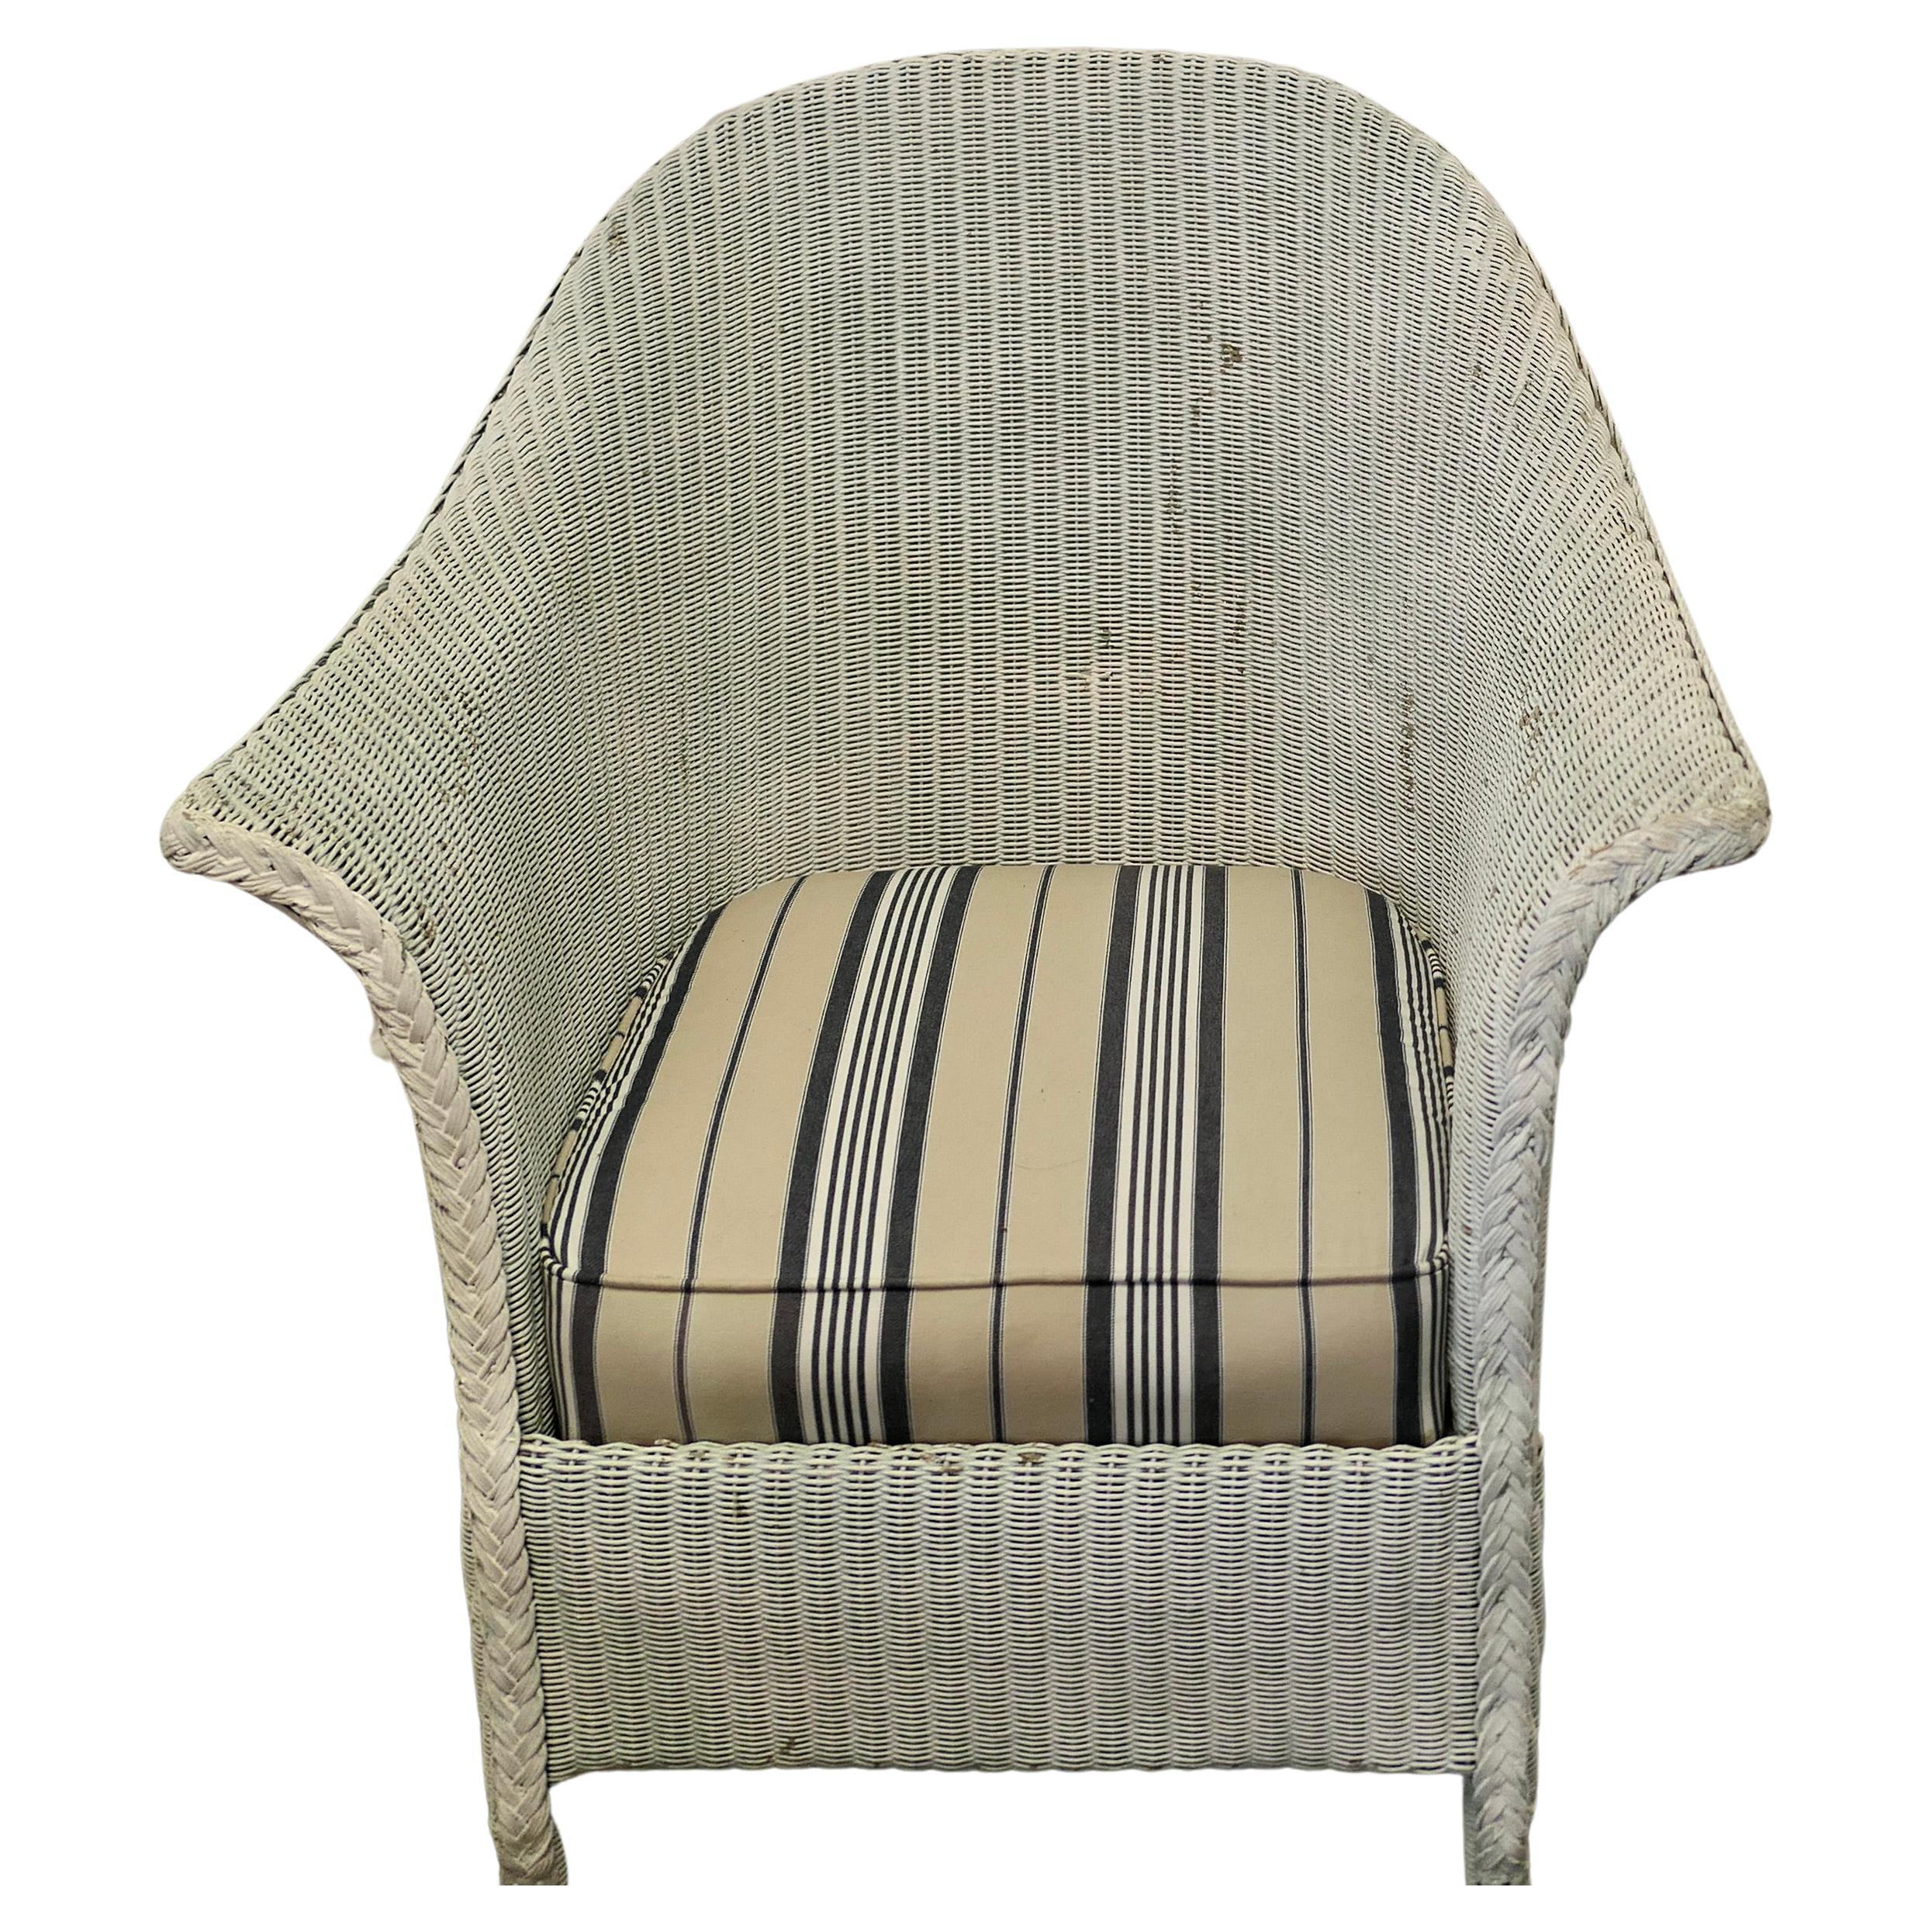 Lloyd Loom Easy Chair For Sale